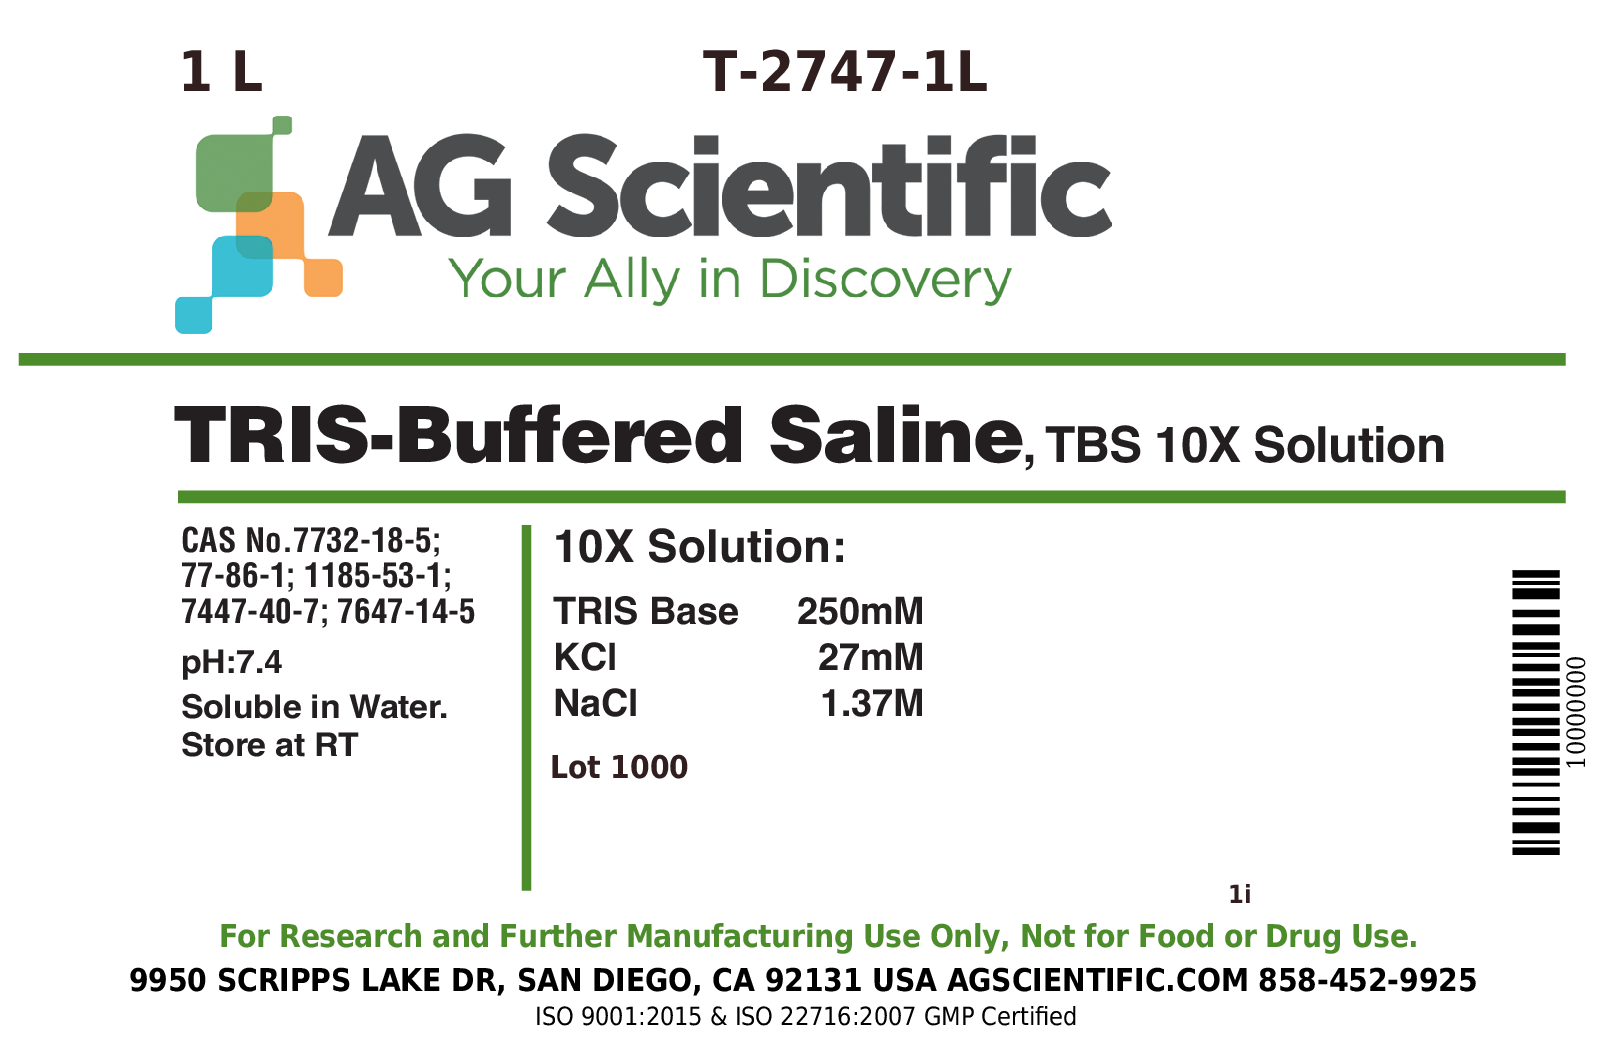 T-2747-1L - TBS [TRIS Buffered Saline], 10X Solution, 1 L